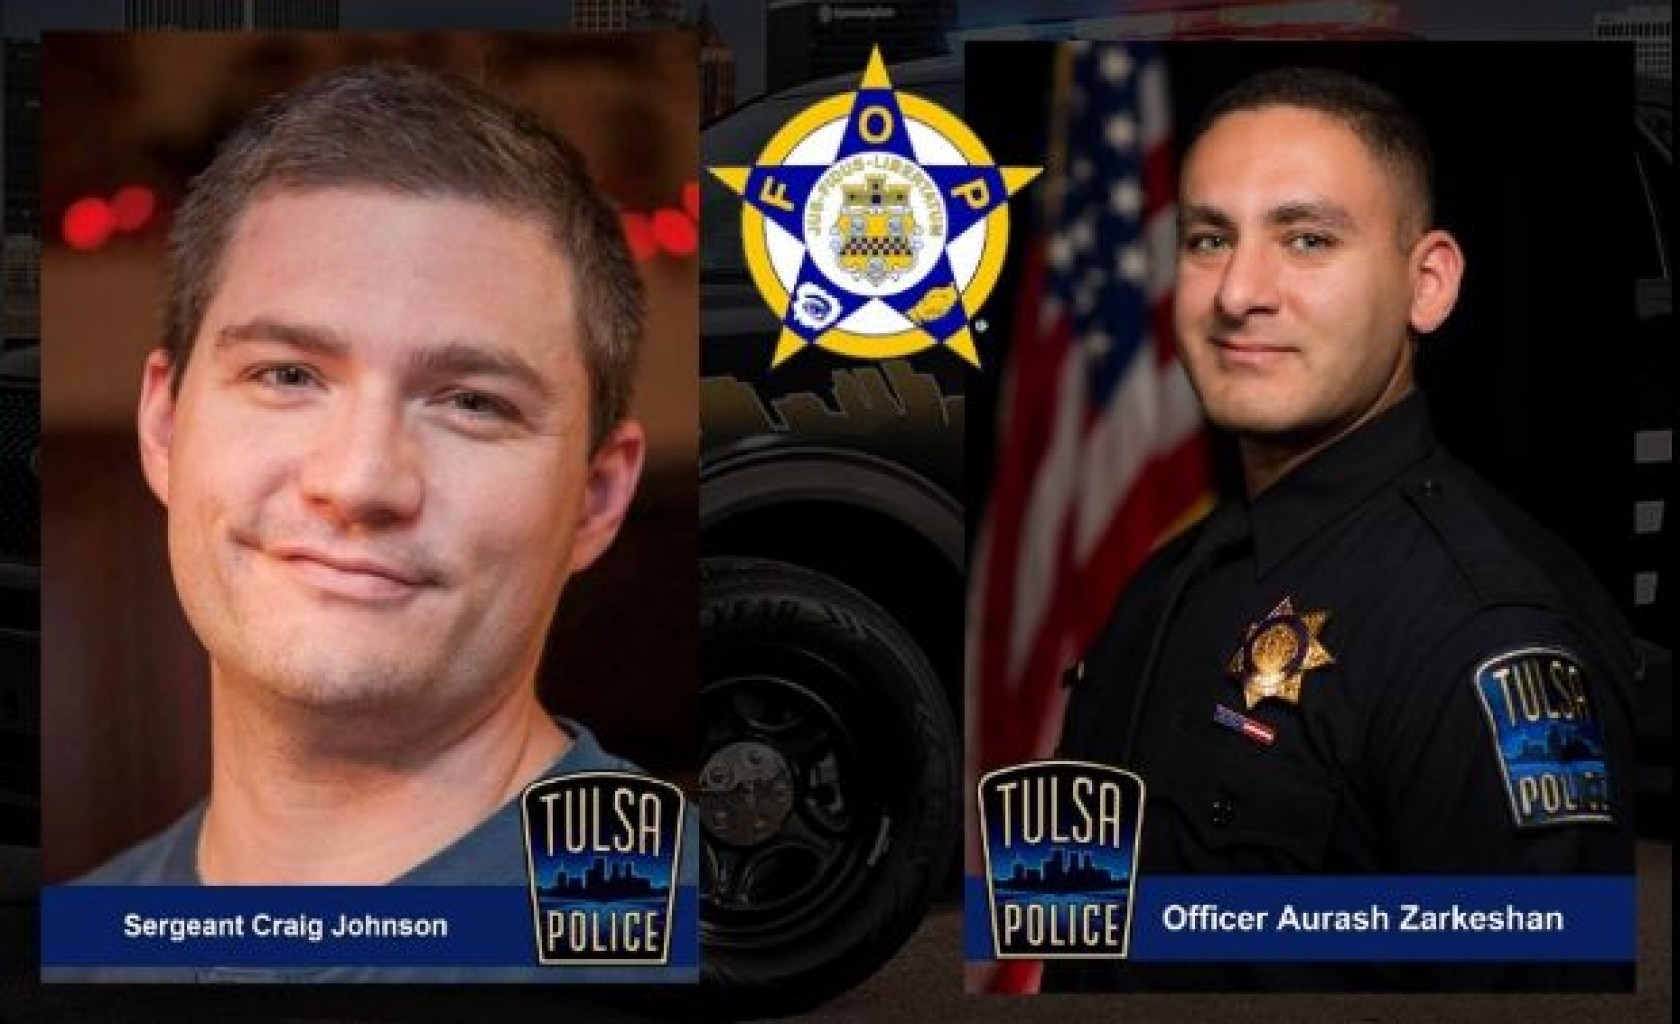 Legislación en honor de oficial de policía baleado en Tulsa